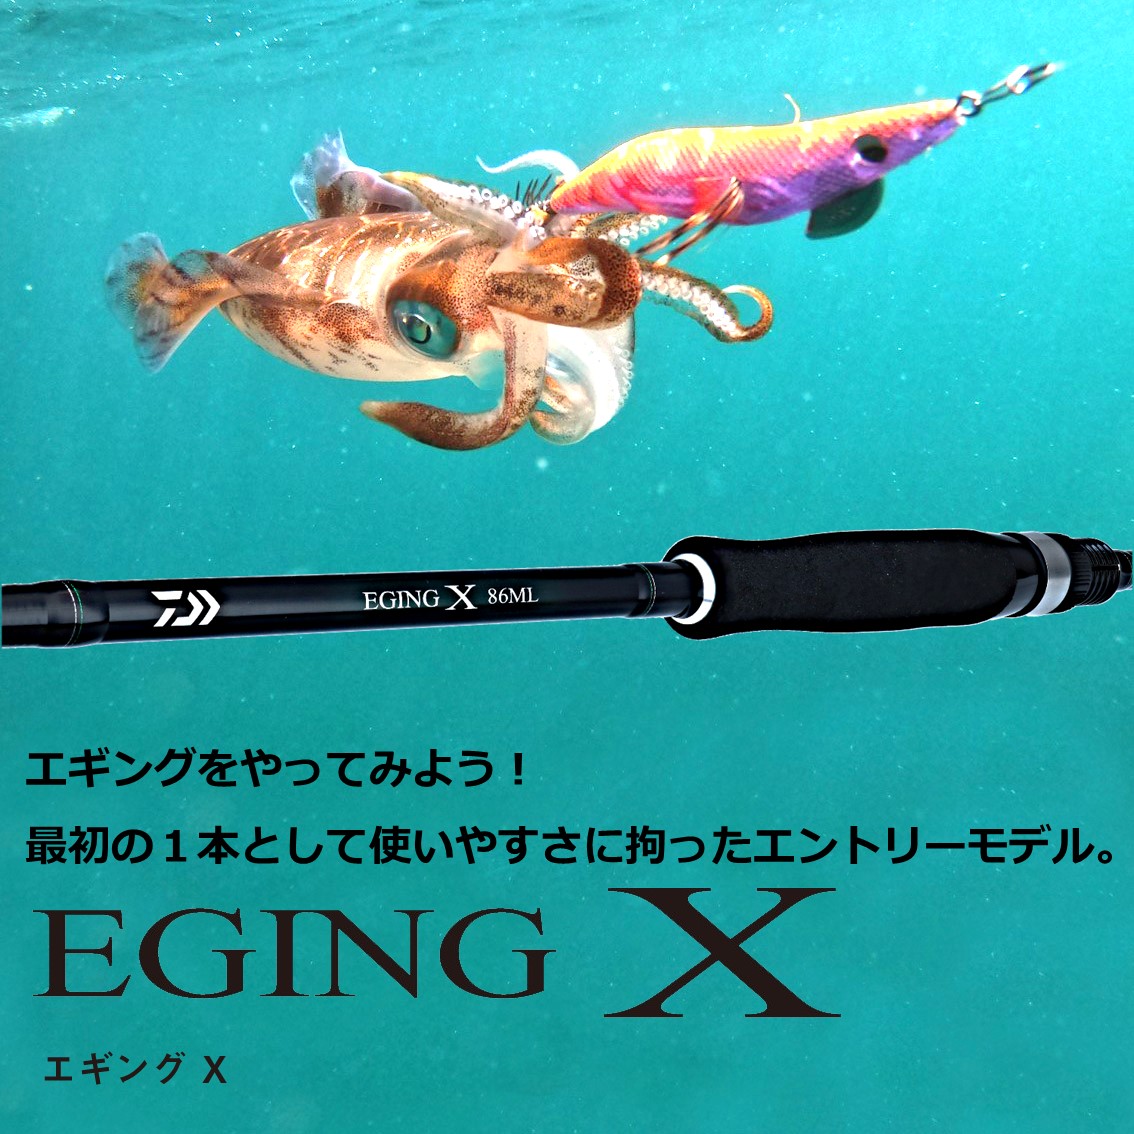 ダイワ エギングX 86ML (エギングロッド) - 釣り具の販売、通販なら